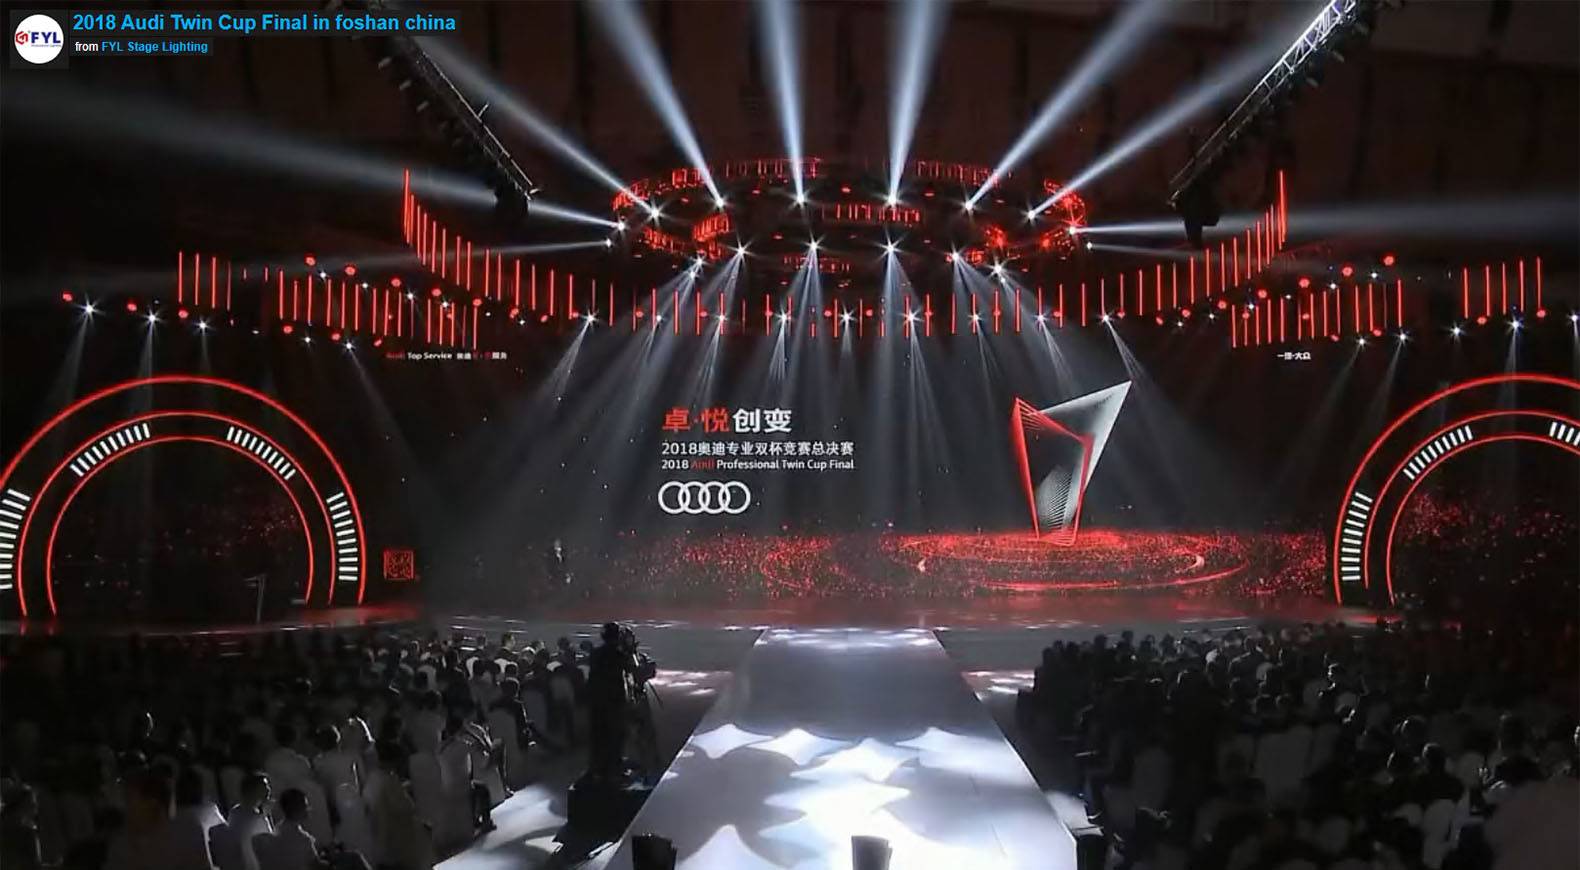 Τελικός Audi Twin Cup 2018 στο Foshan της Κίνας